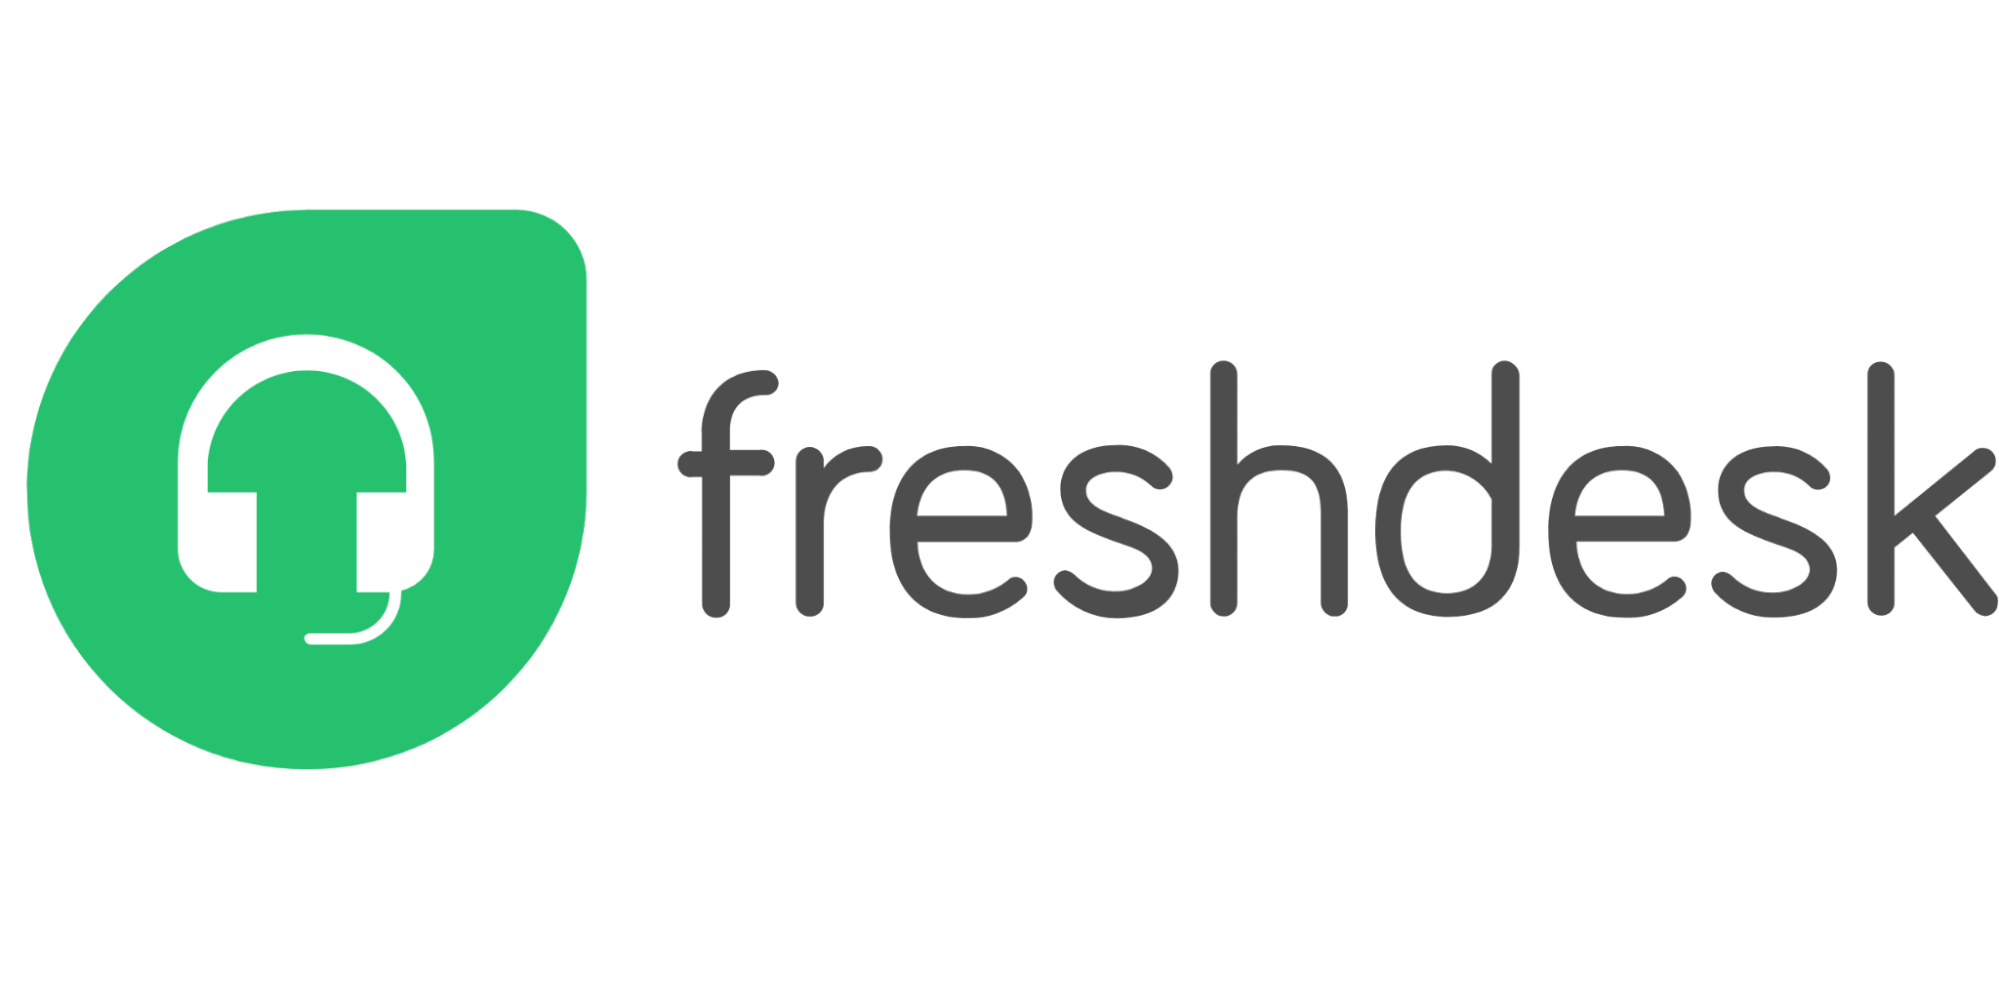 Imagem do logo da Frashdesk. A imagem possui uma forma geométrica verde com um desenho de um fone de ouvido a esquerda e o nome da solução escrita na cor preta.